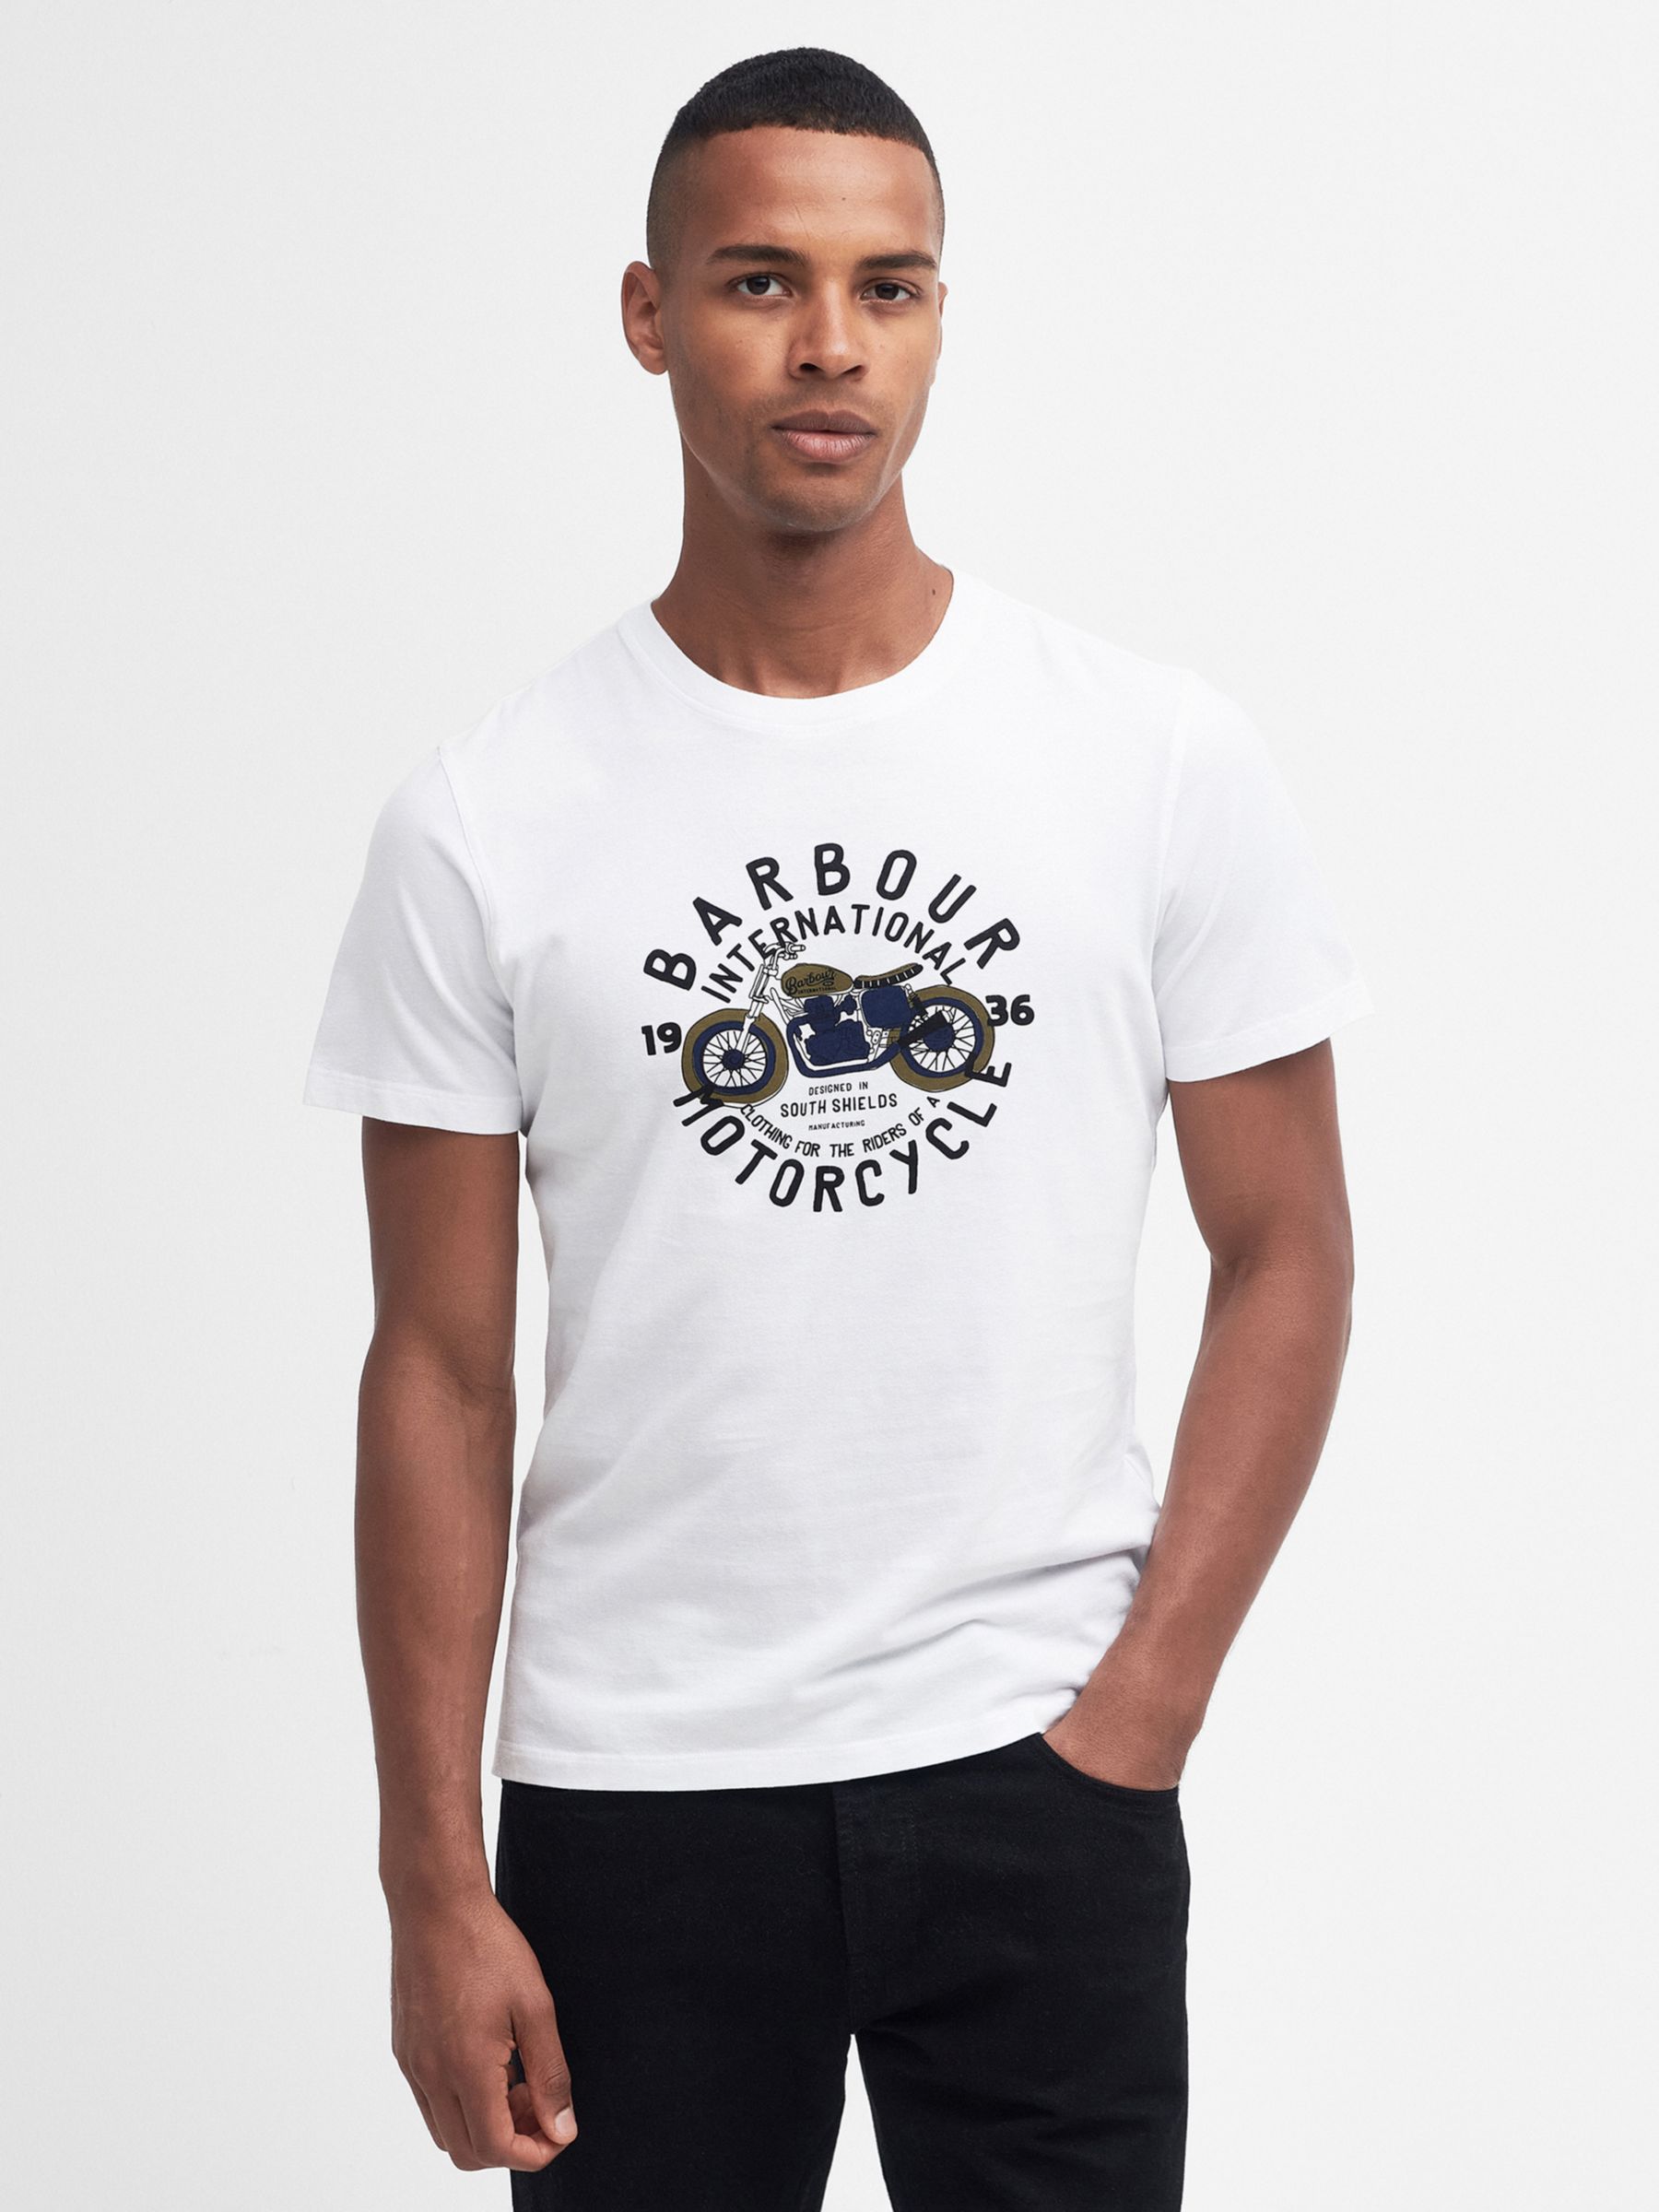 Barbour International Spirit T-Shirt, Whisper White, S